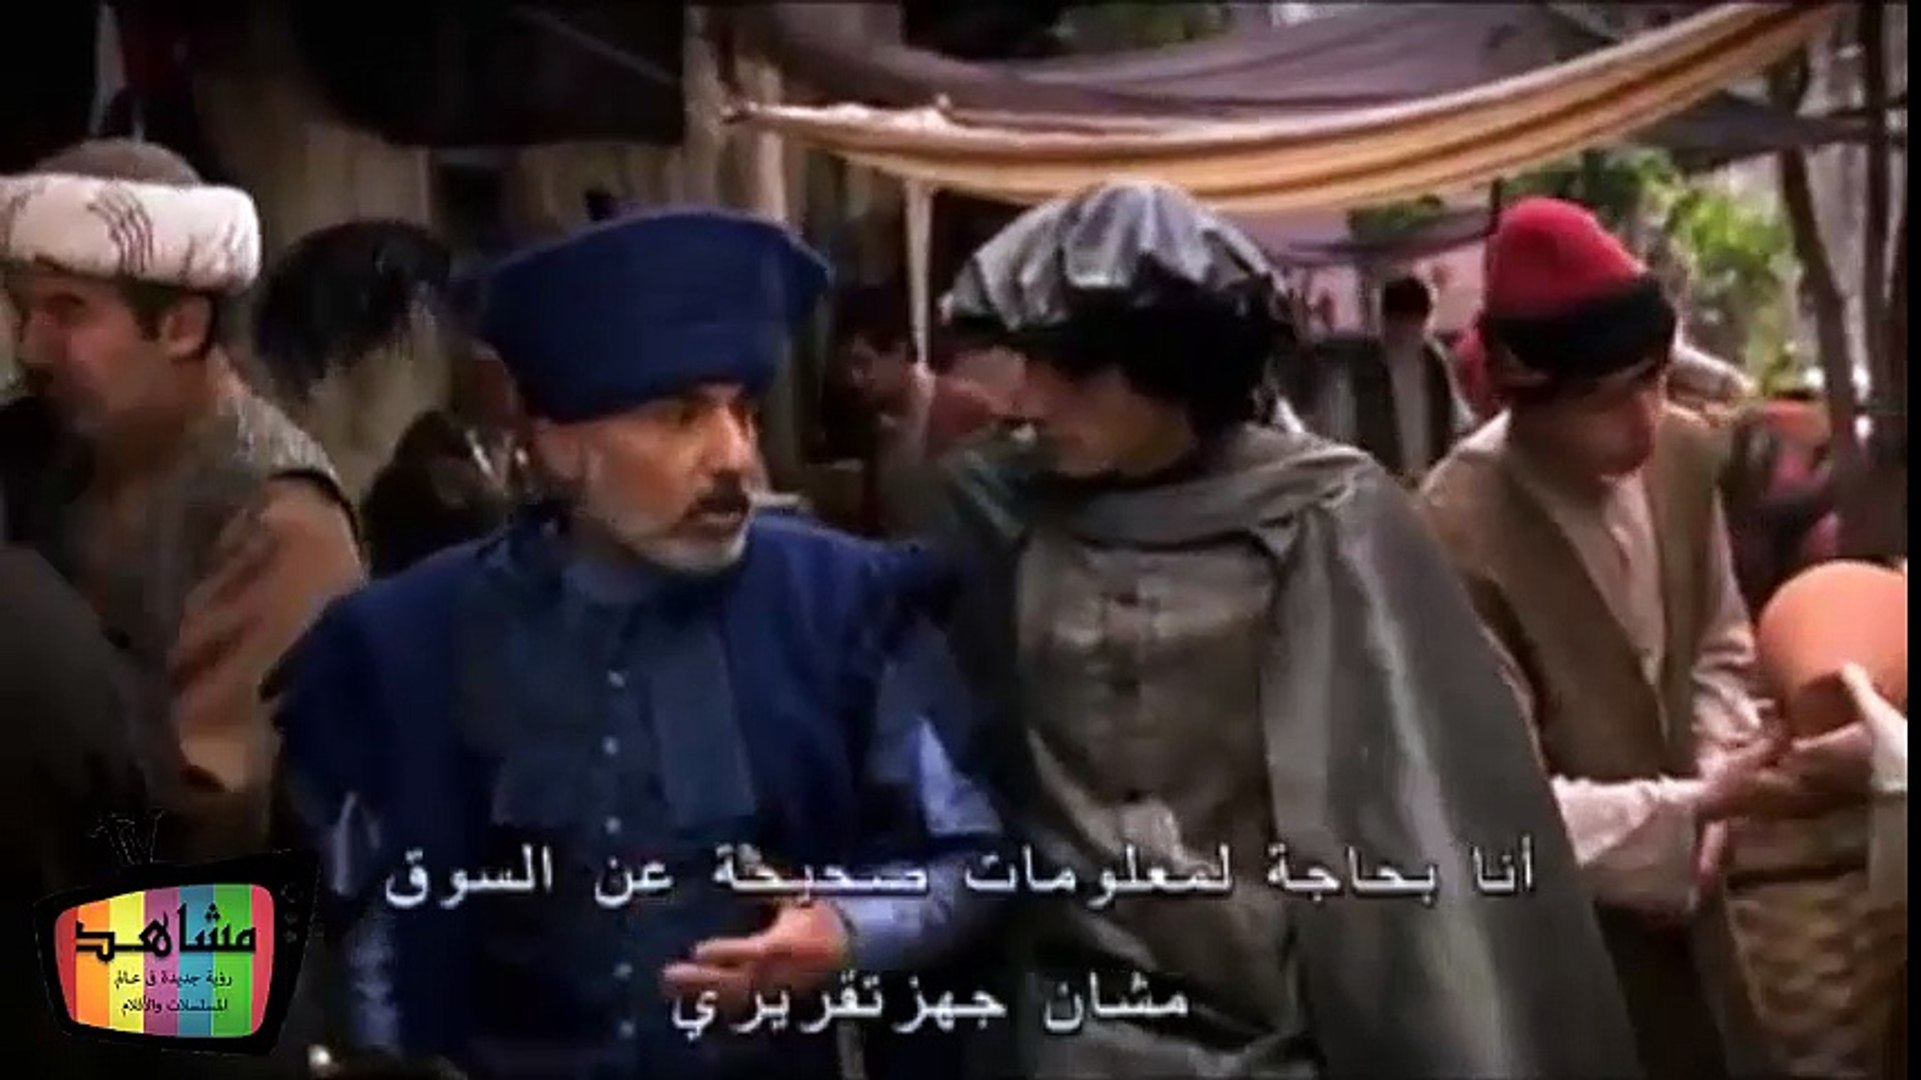 حريم السلطان الجزء الأول - الحلقة 3 - فيديو Dailymotion